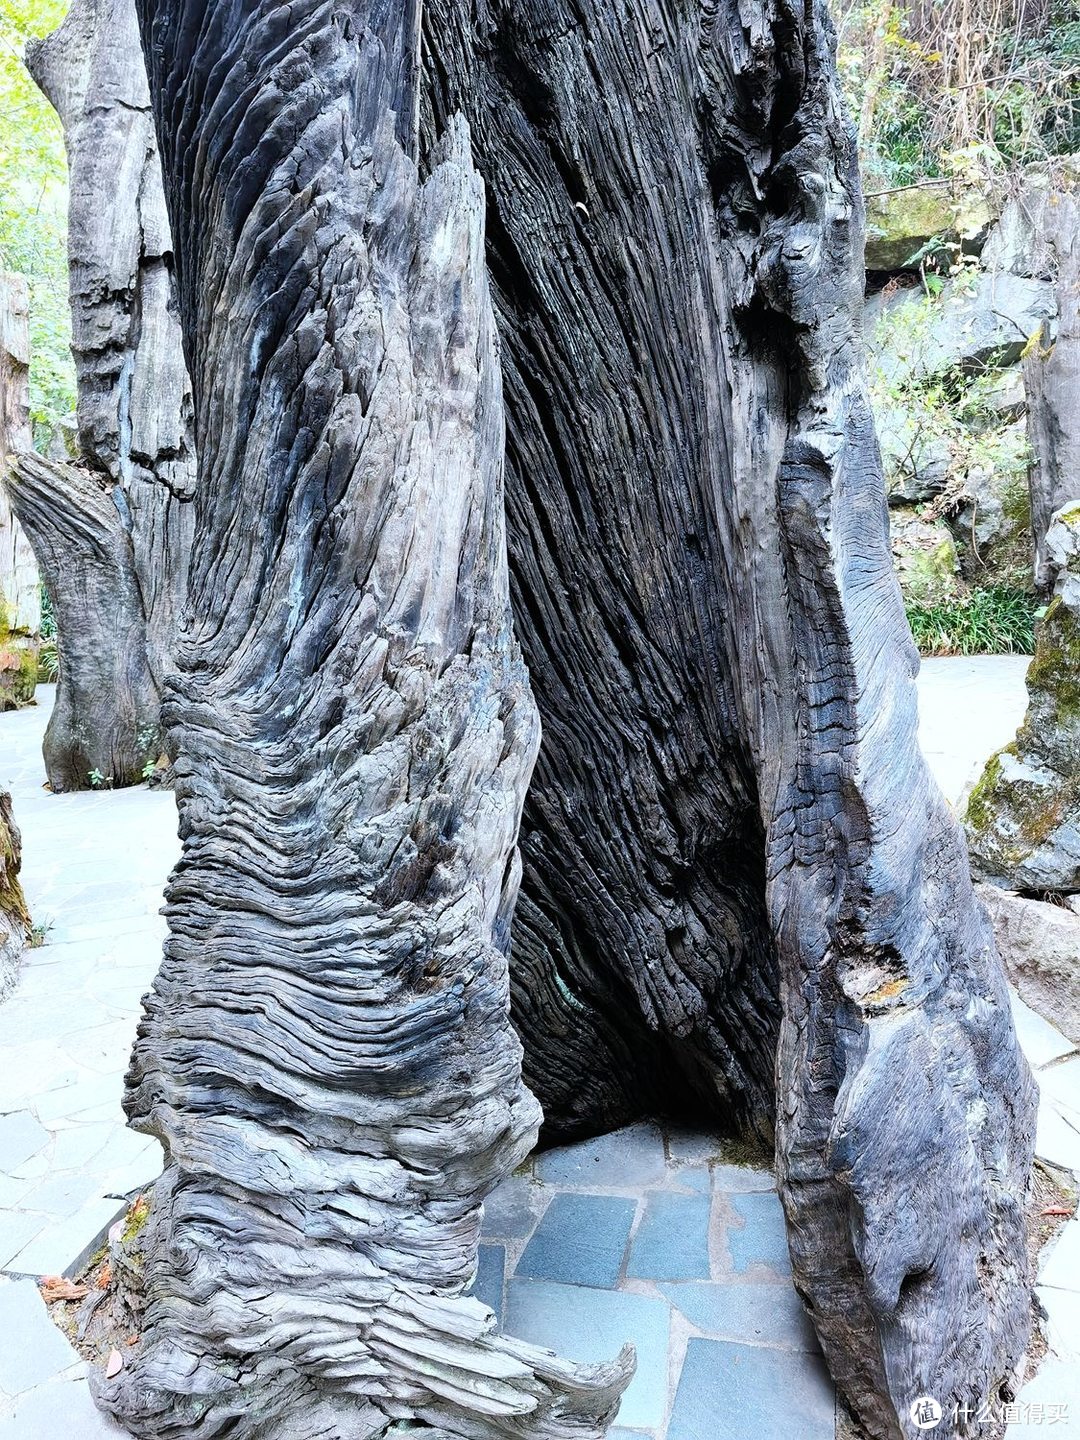 树根，树根，都是树根-根雕特色的5A级景区-开化 根宫佛国游记